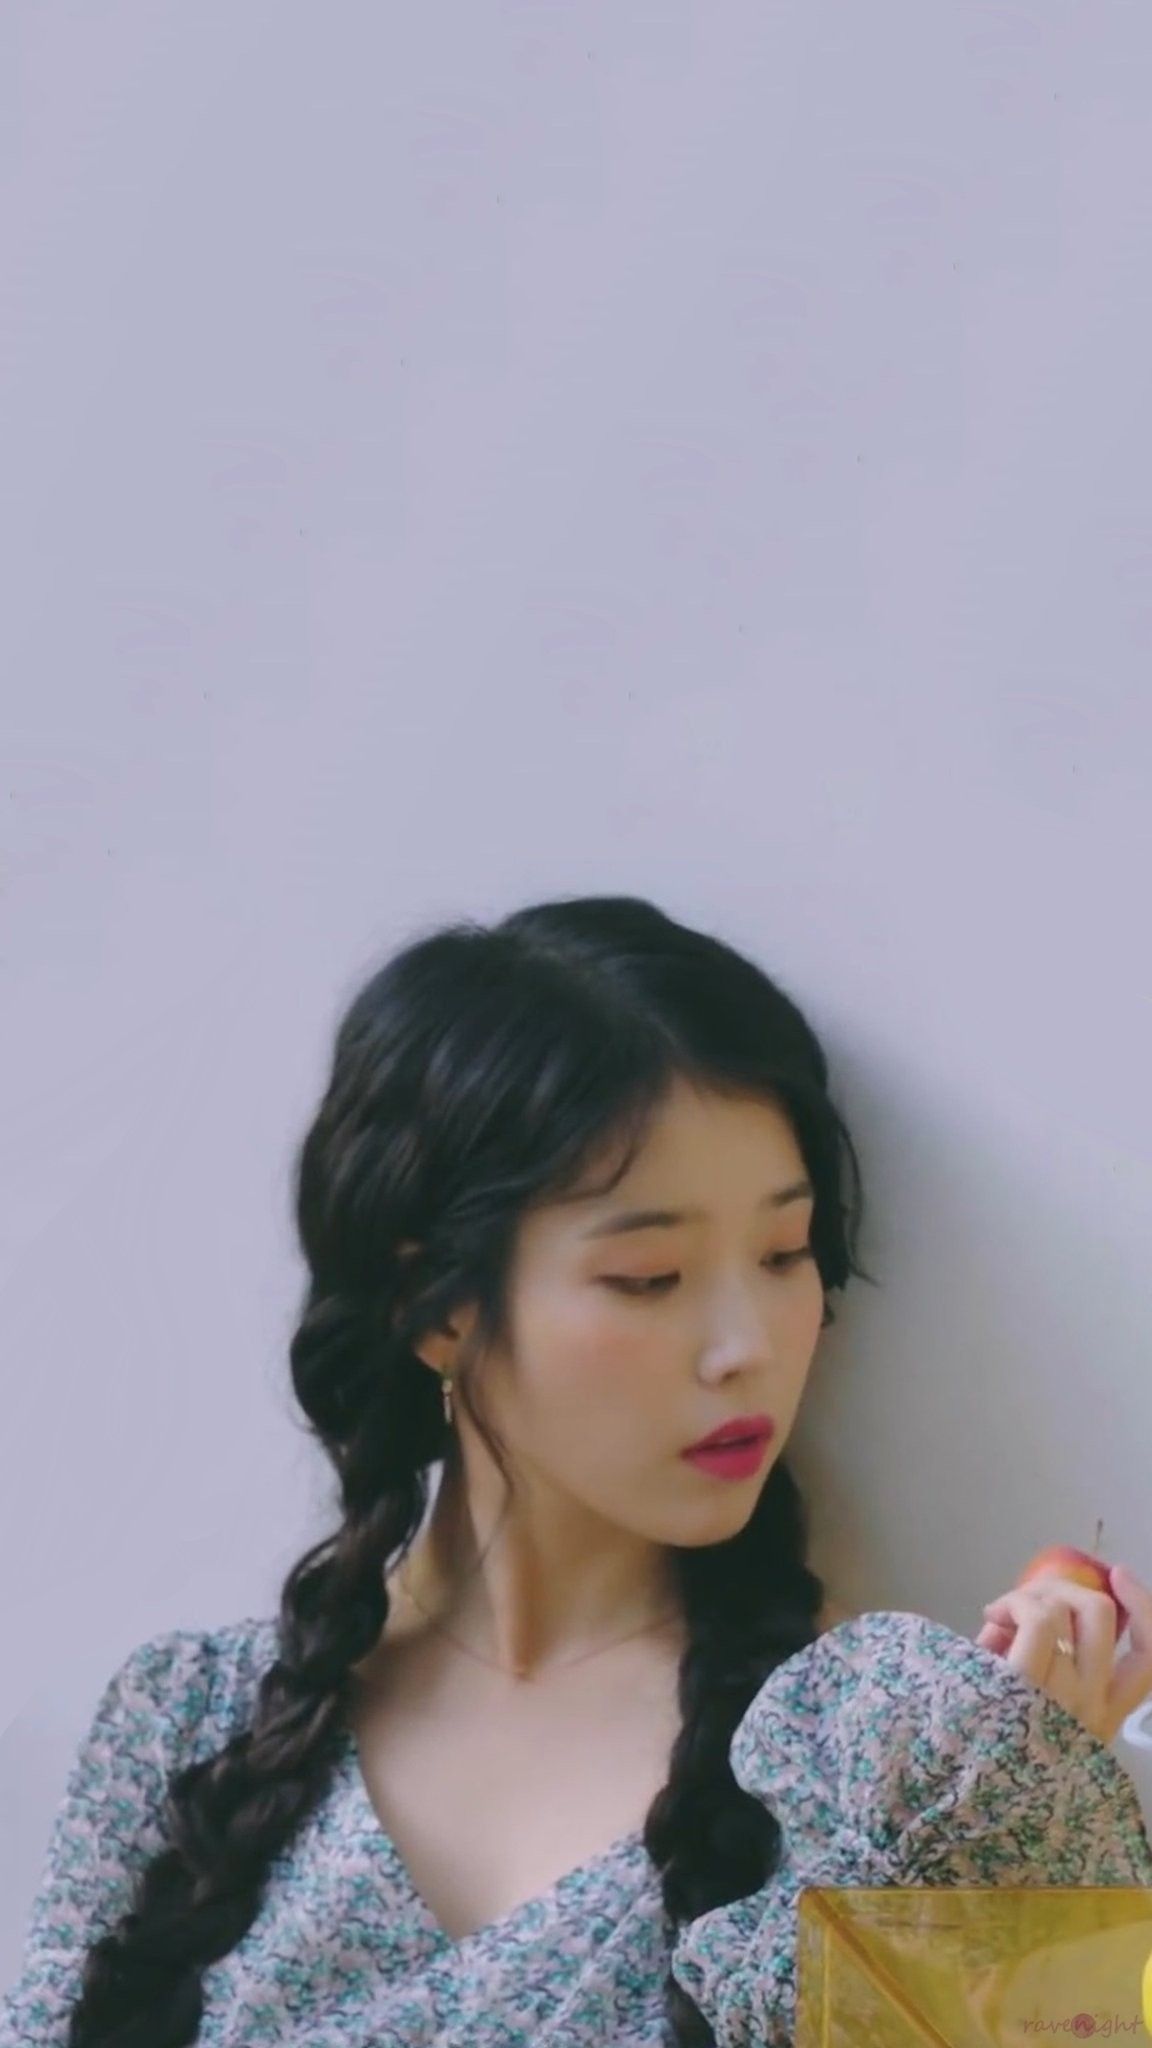 IU wallpaper (2019 Season's Greetings Preview). Kpop girl groups